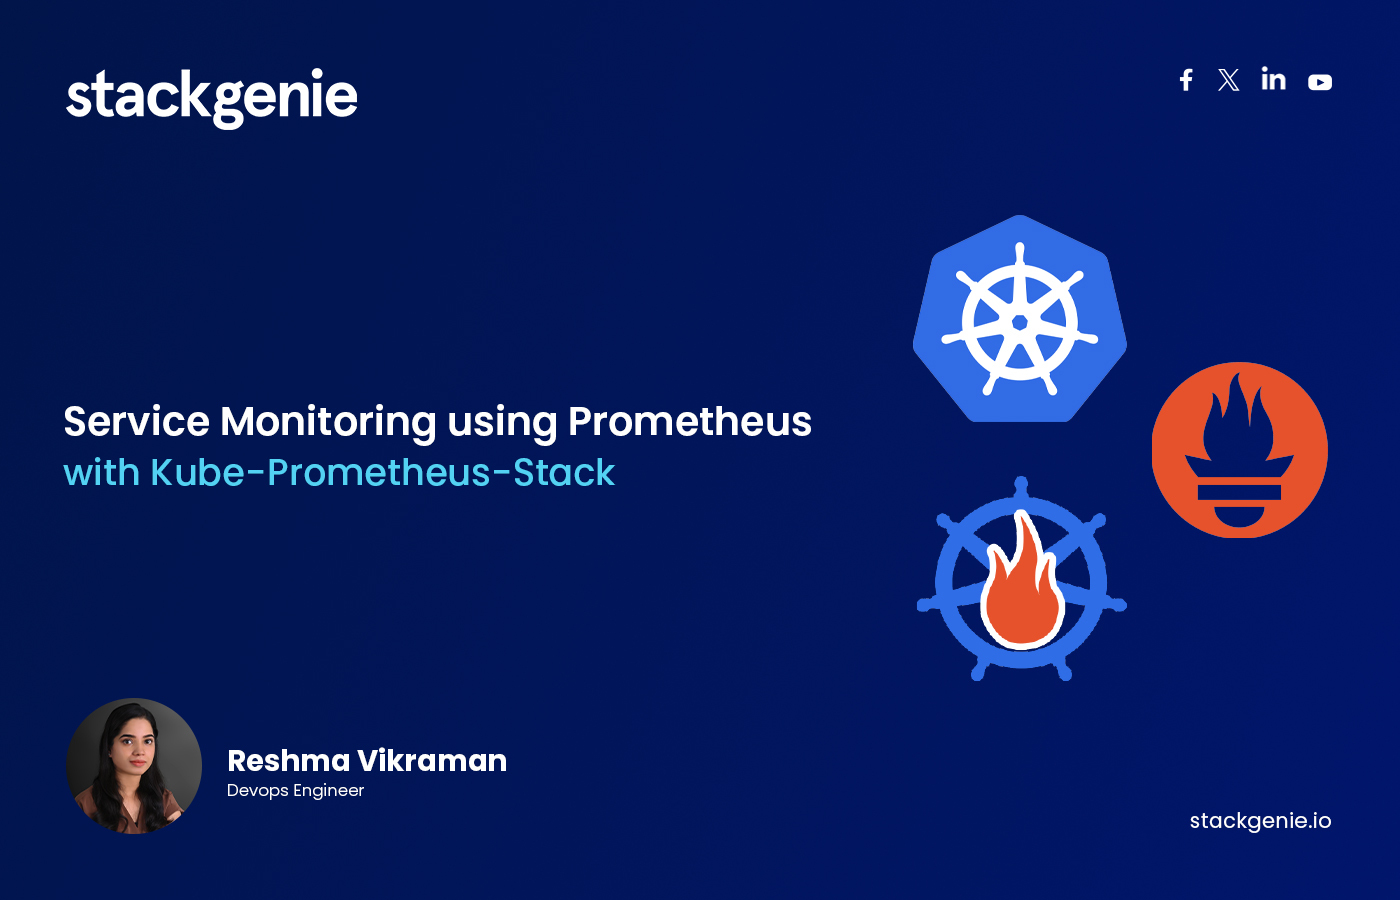 Service Monitoring using Prometheus with Kube-Prometheus-Stack